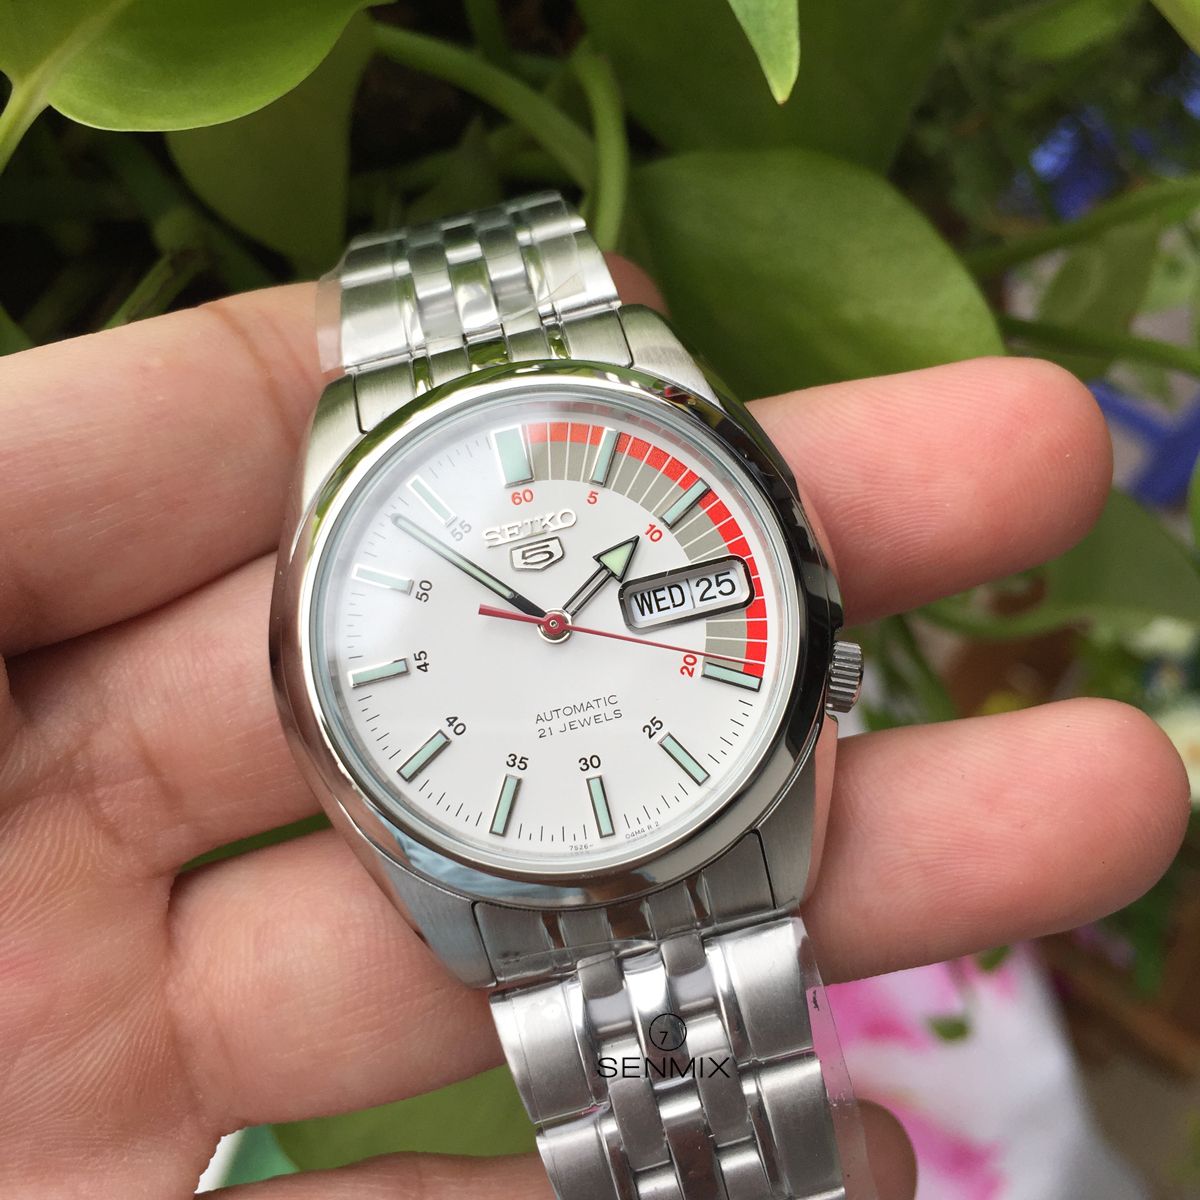 Seiko Automatic White Dial Men's Watch Seiko 5 SNK369 xách tay chính hãng  giá rẻ bảo hành dài - Đồng hồ nam - Senmix